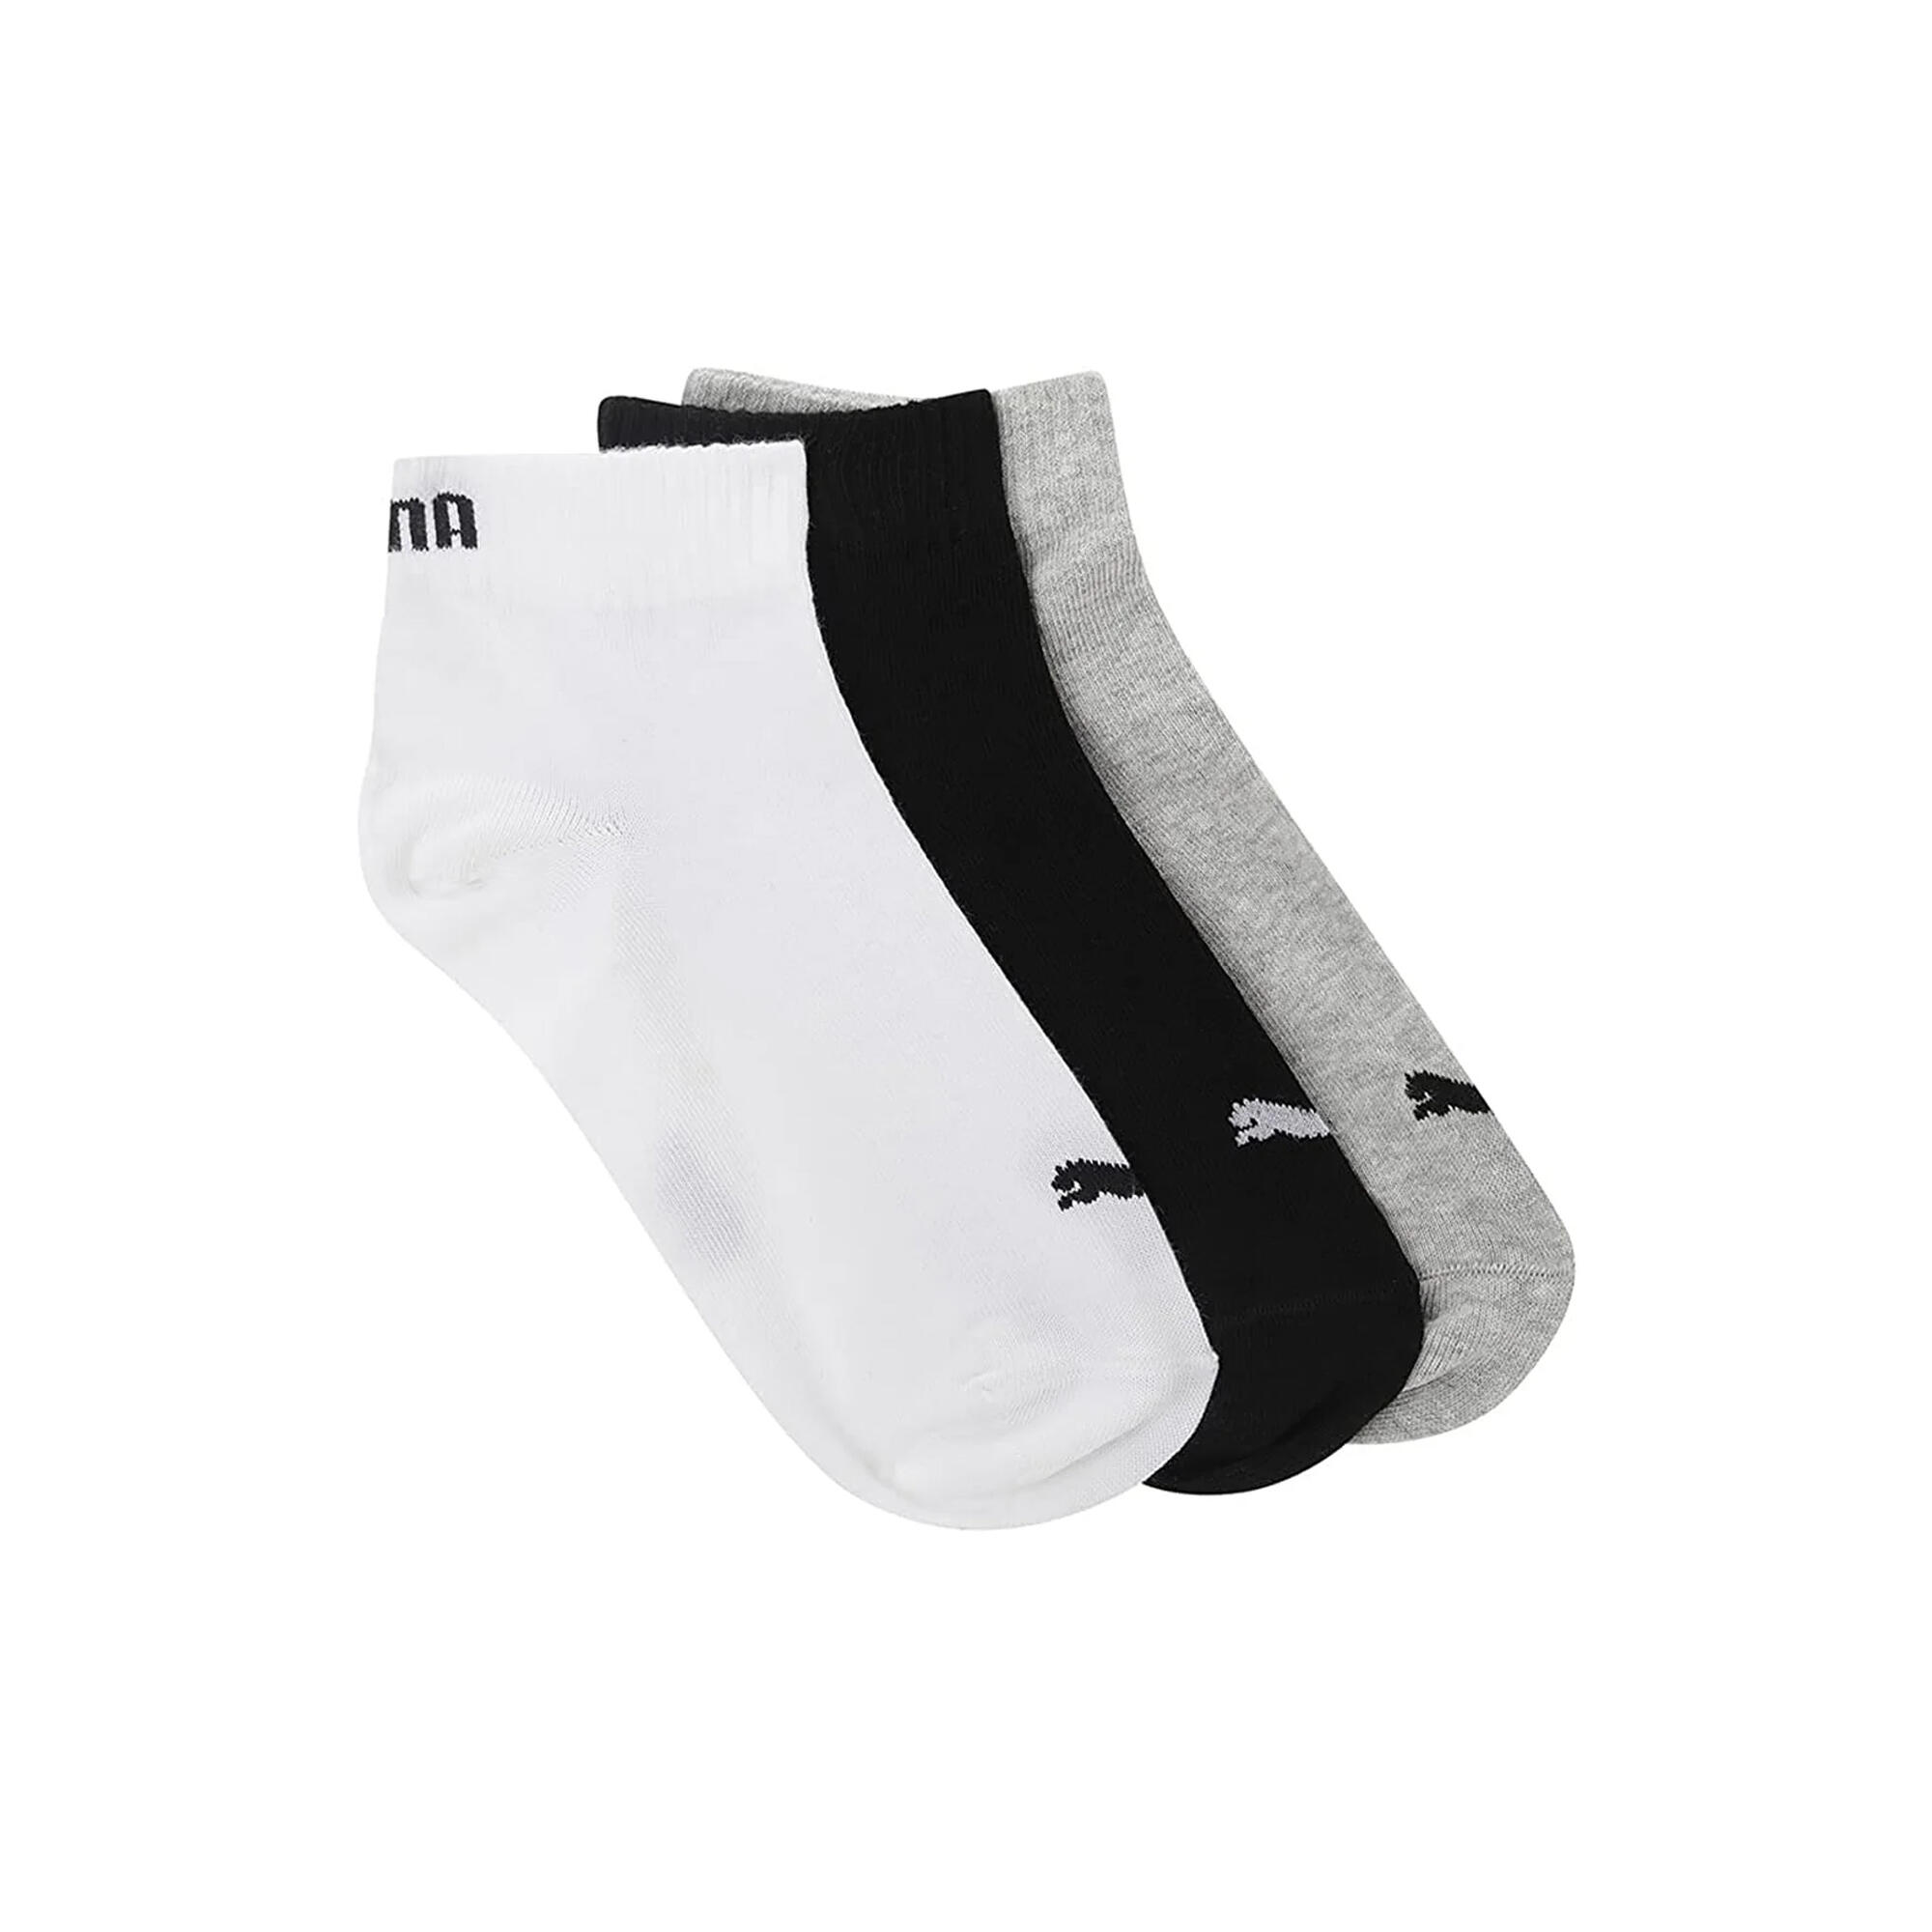 Womens/Ladies Quarter Ankle Socks (Pack of 3) (Black/White/Grey) 3/3